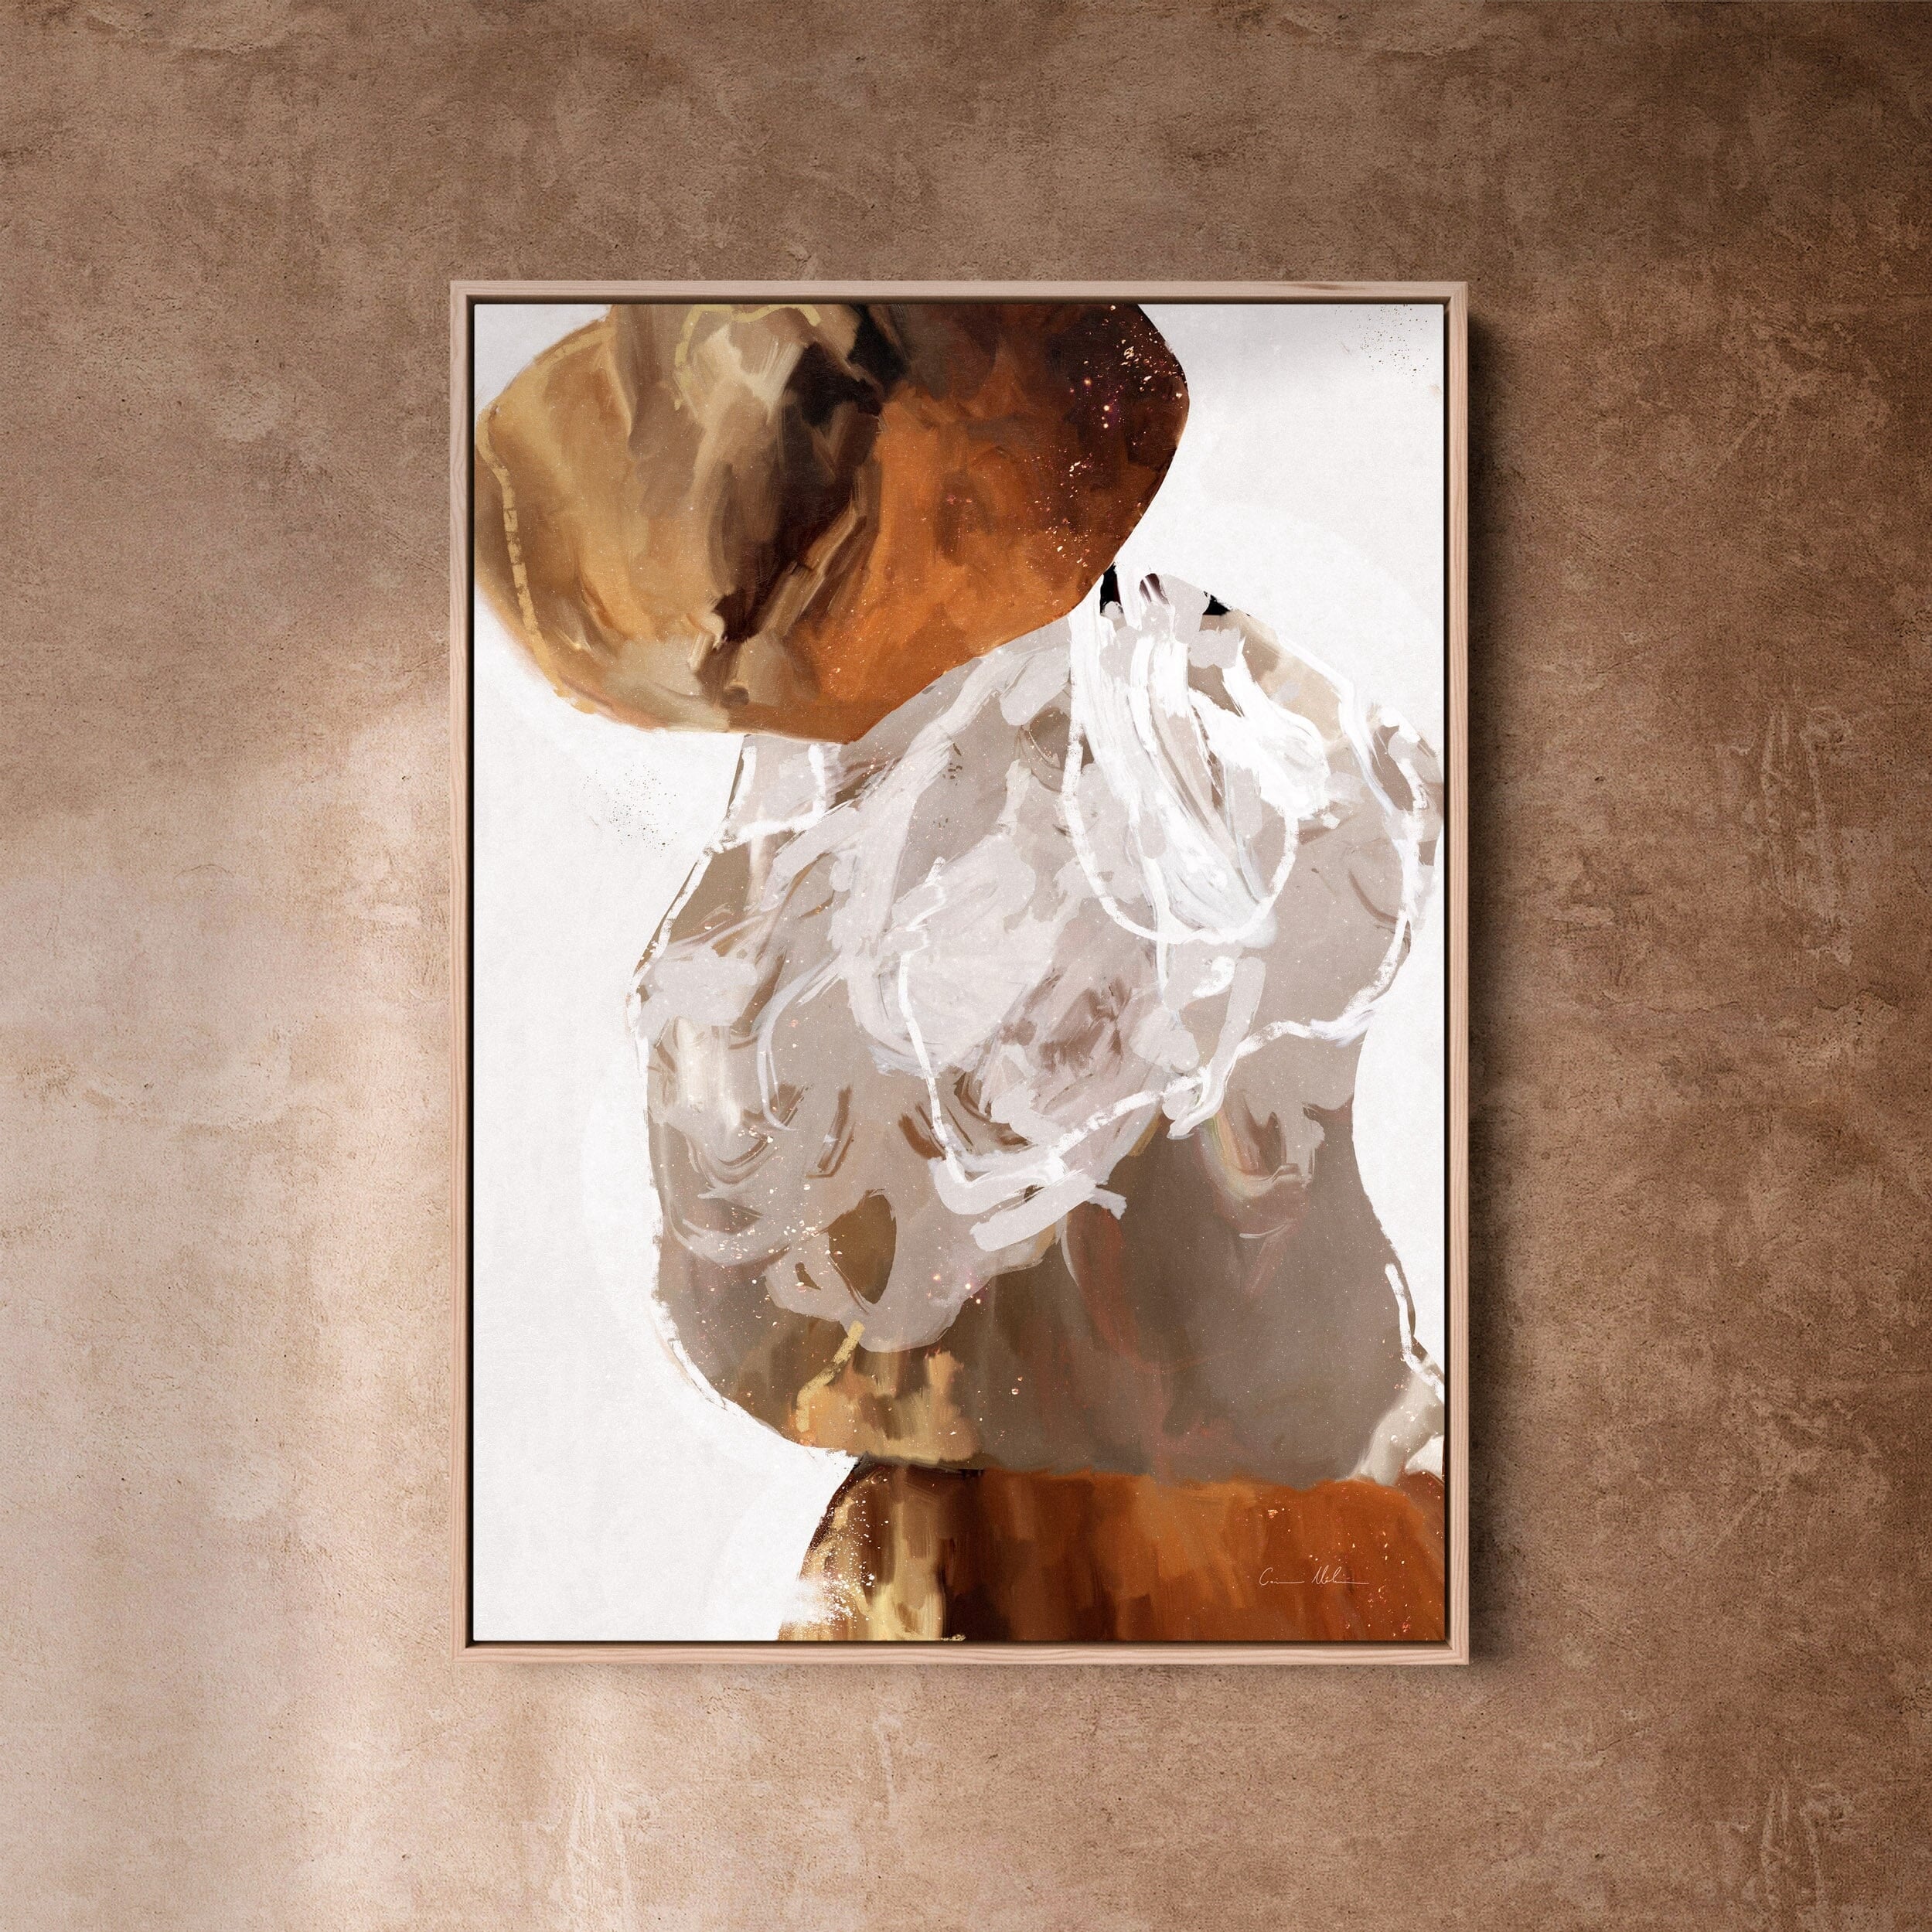 "Kununurra" on Canvas - Portrait I Canvas Wall Art Corinne Melanie Art Professionally Framed - Oak 24x32in / 60x80cm 